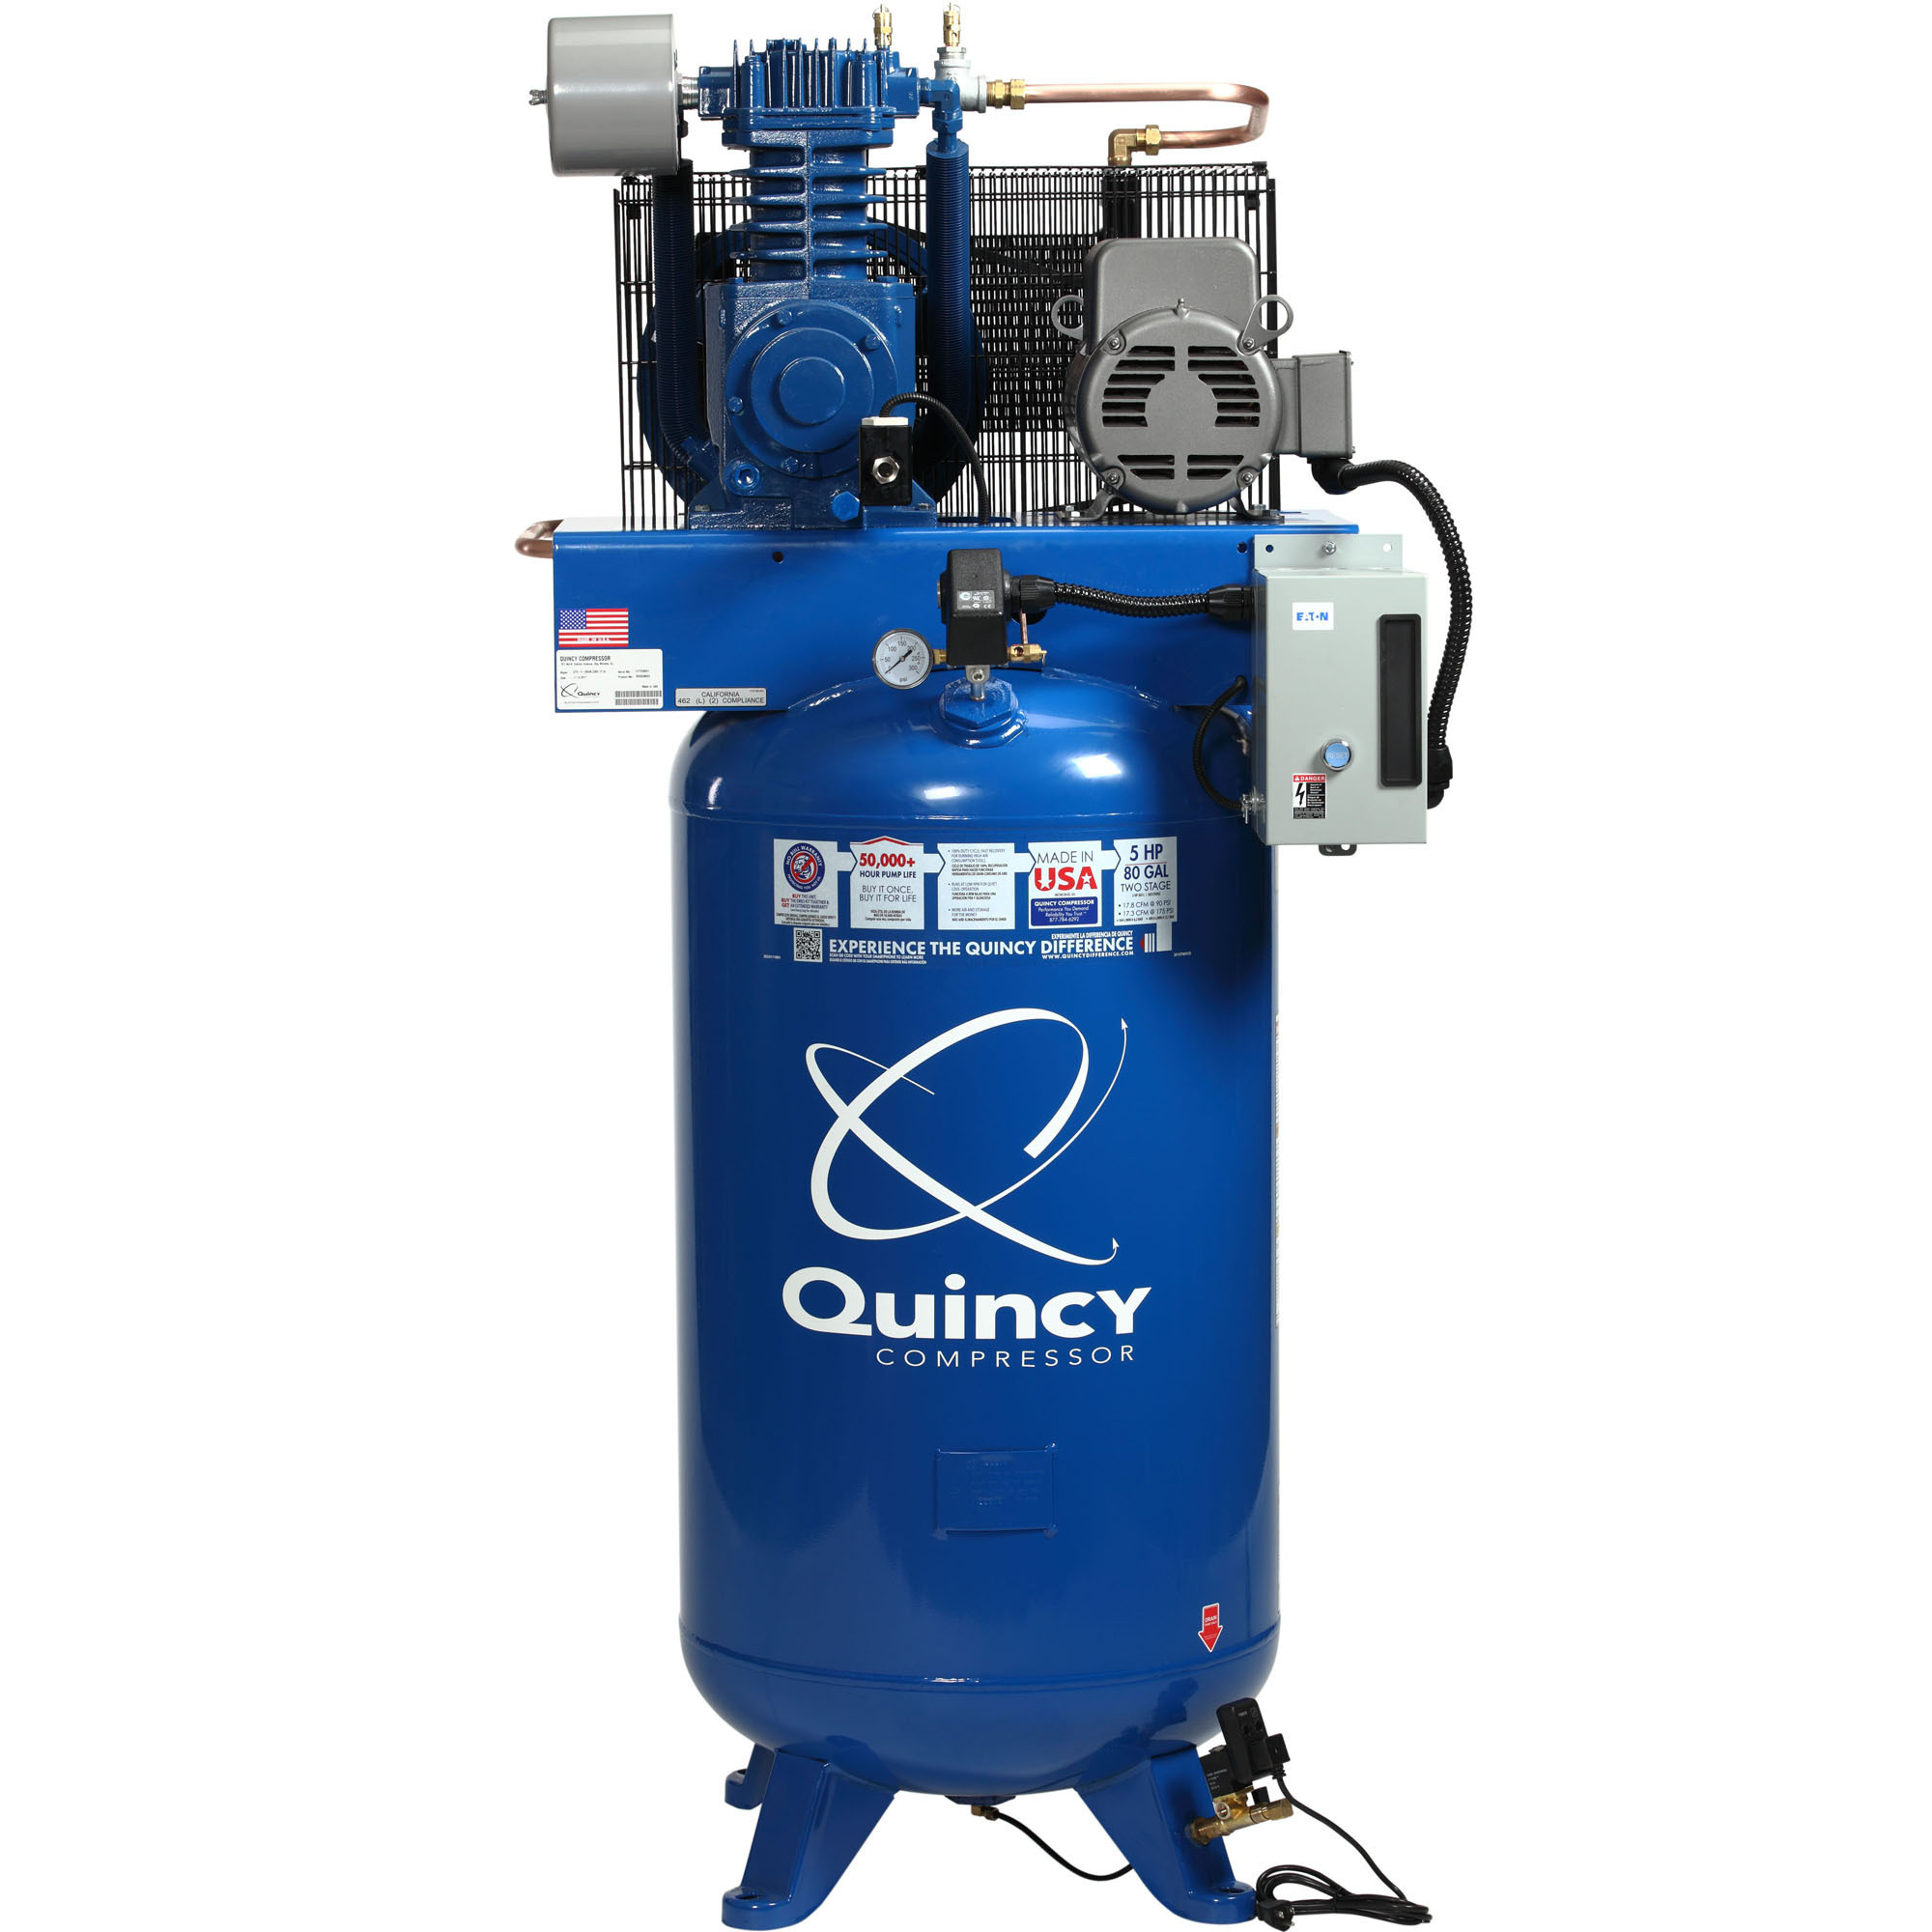 Quincy Compressor 2020040711